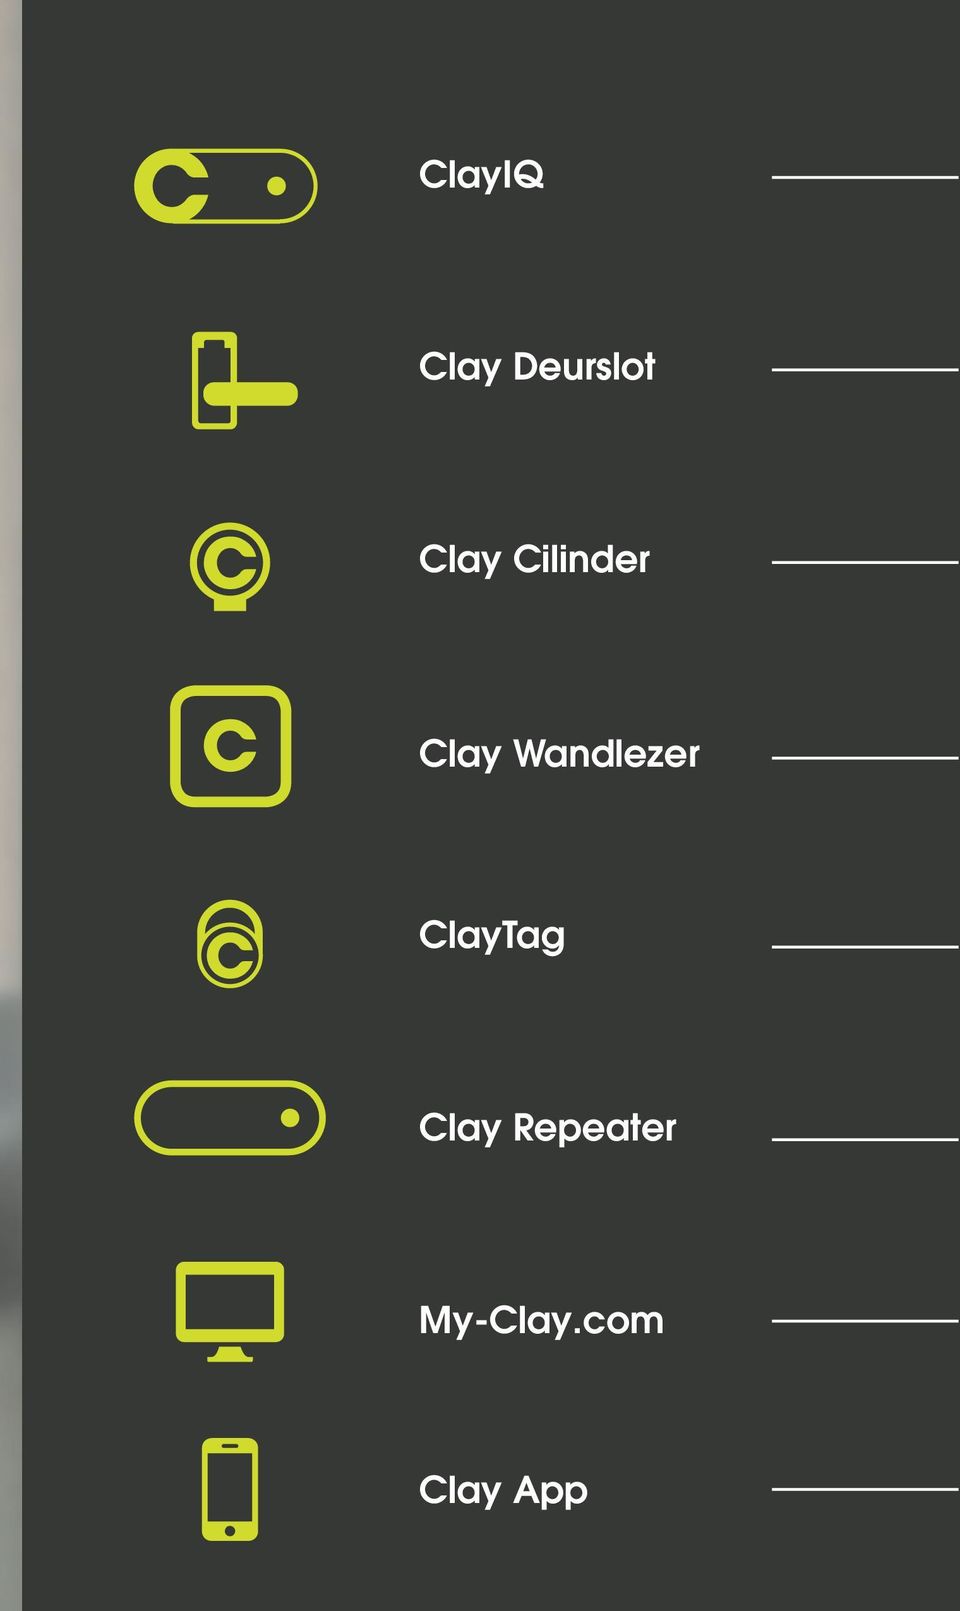 Wandlezer ClayTag Clay